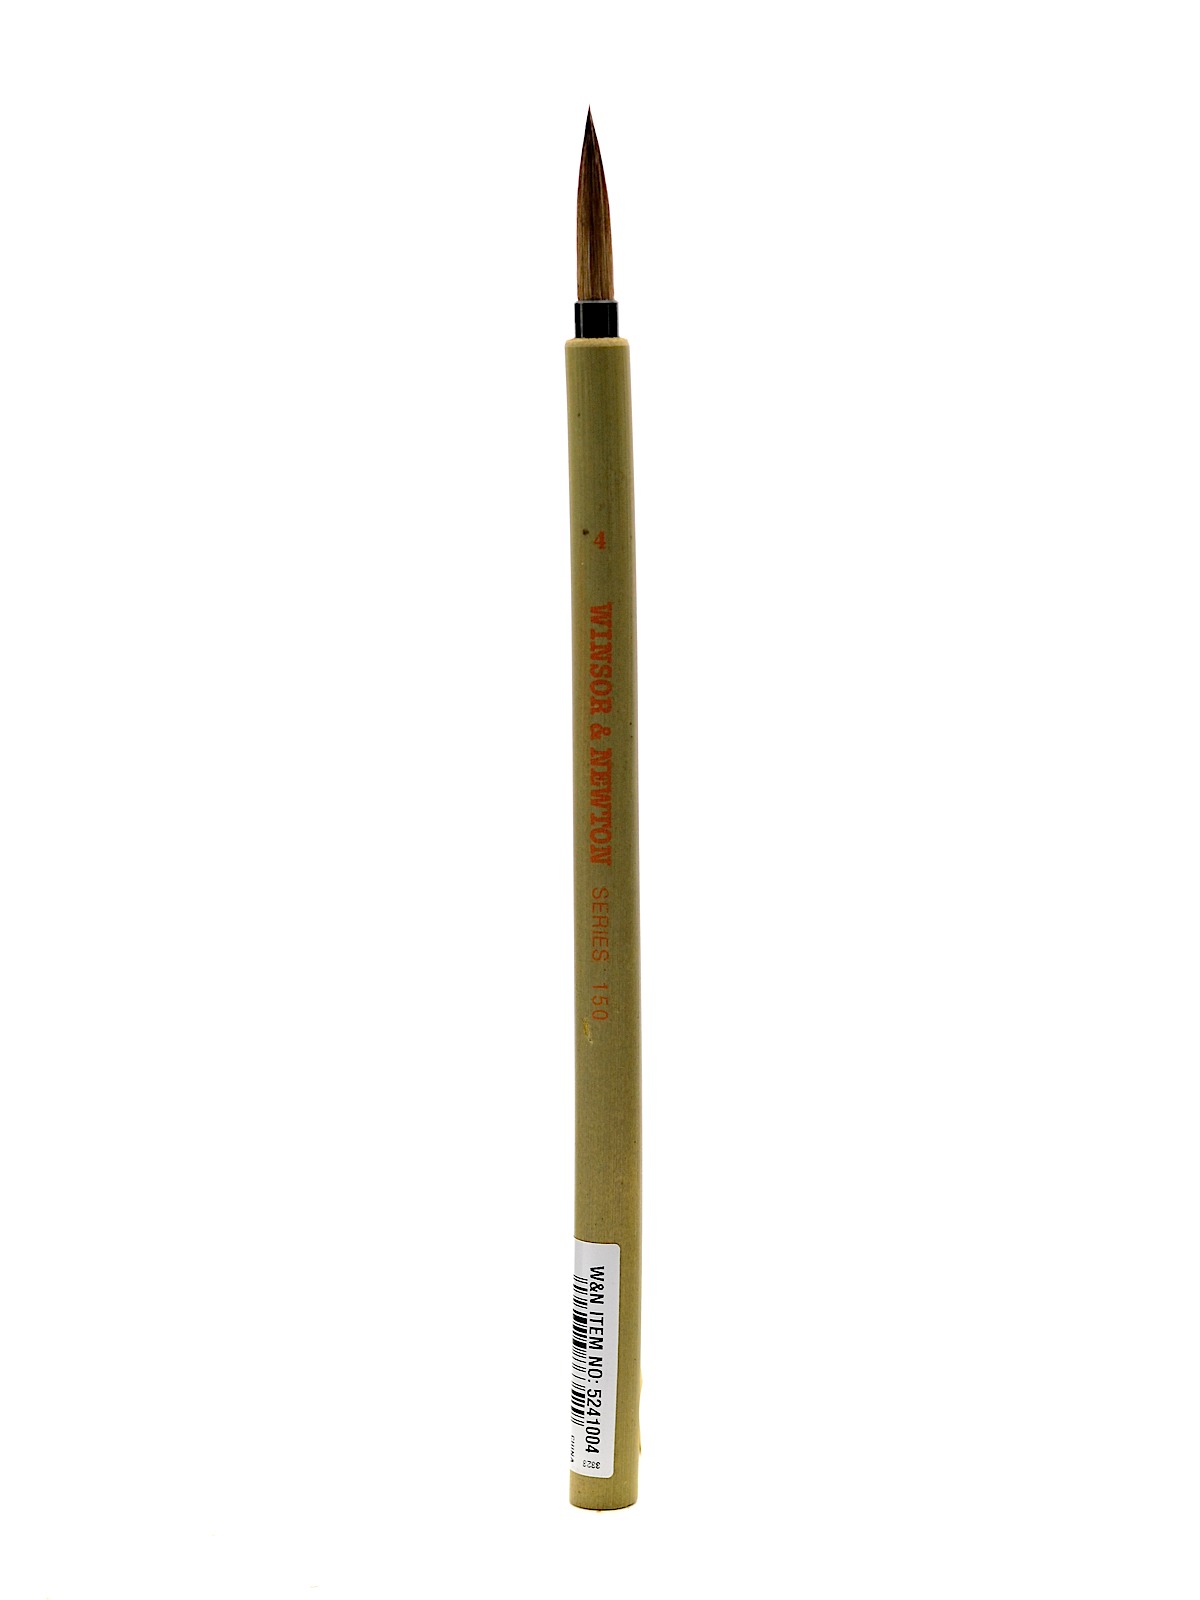 Series 150 Bamboo Brushes 4